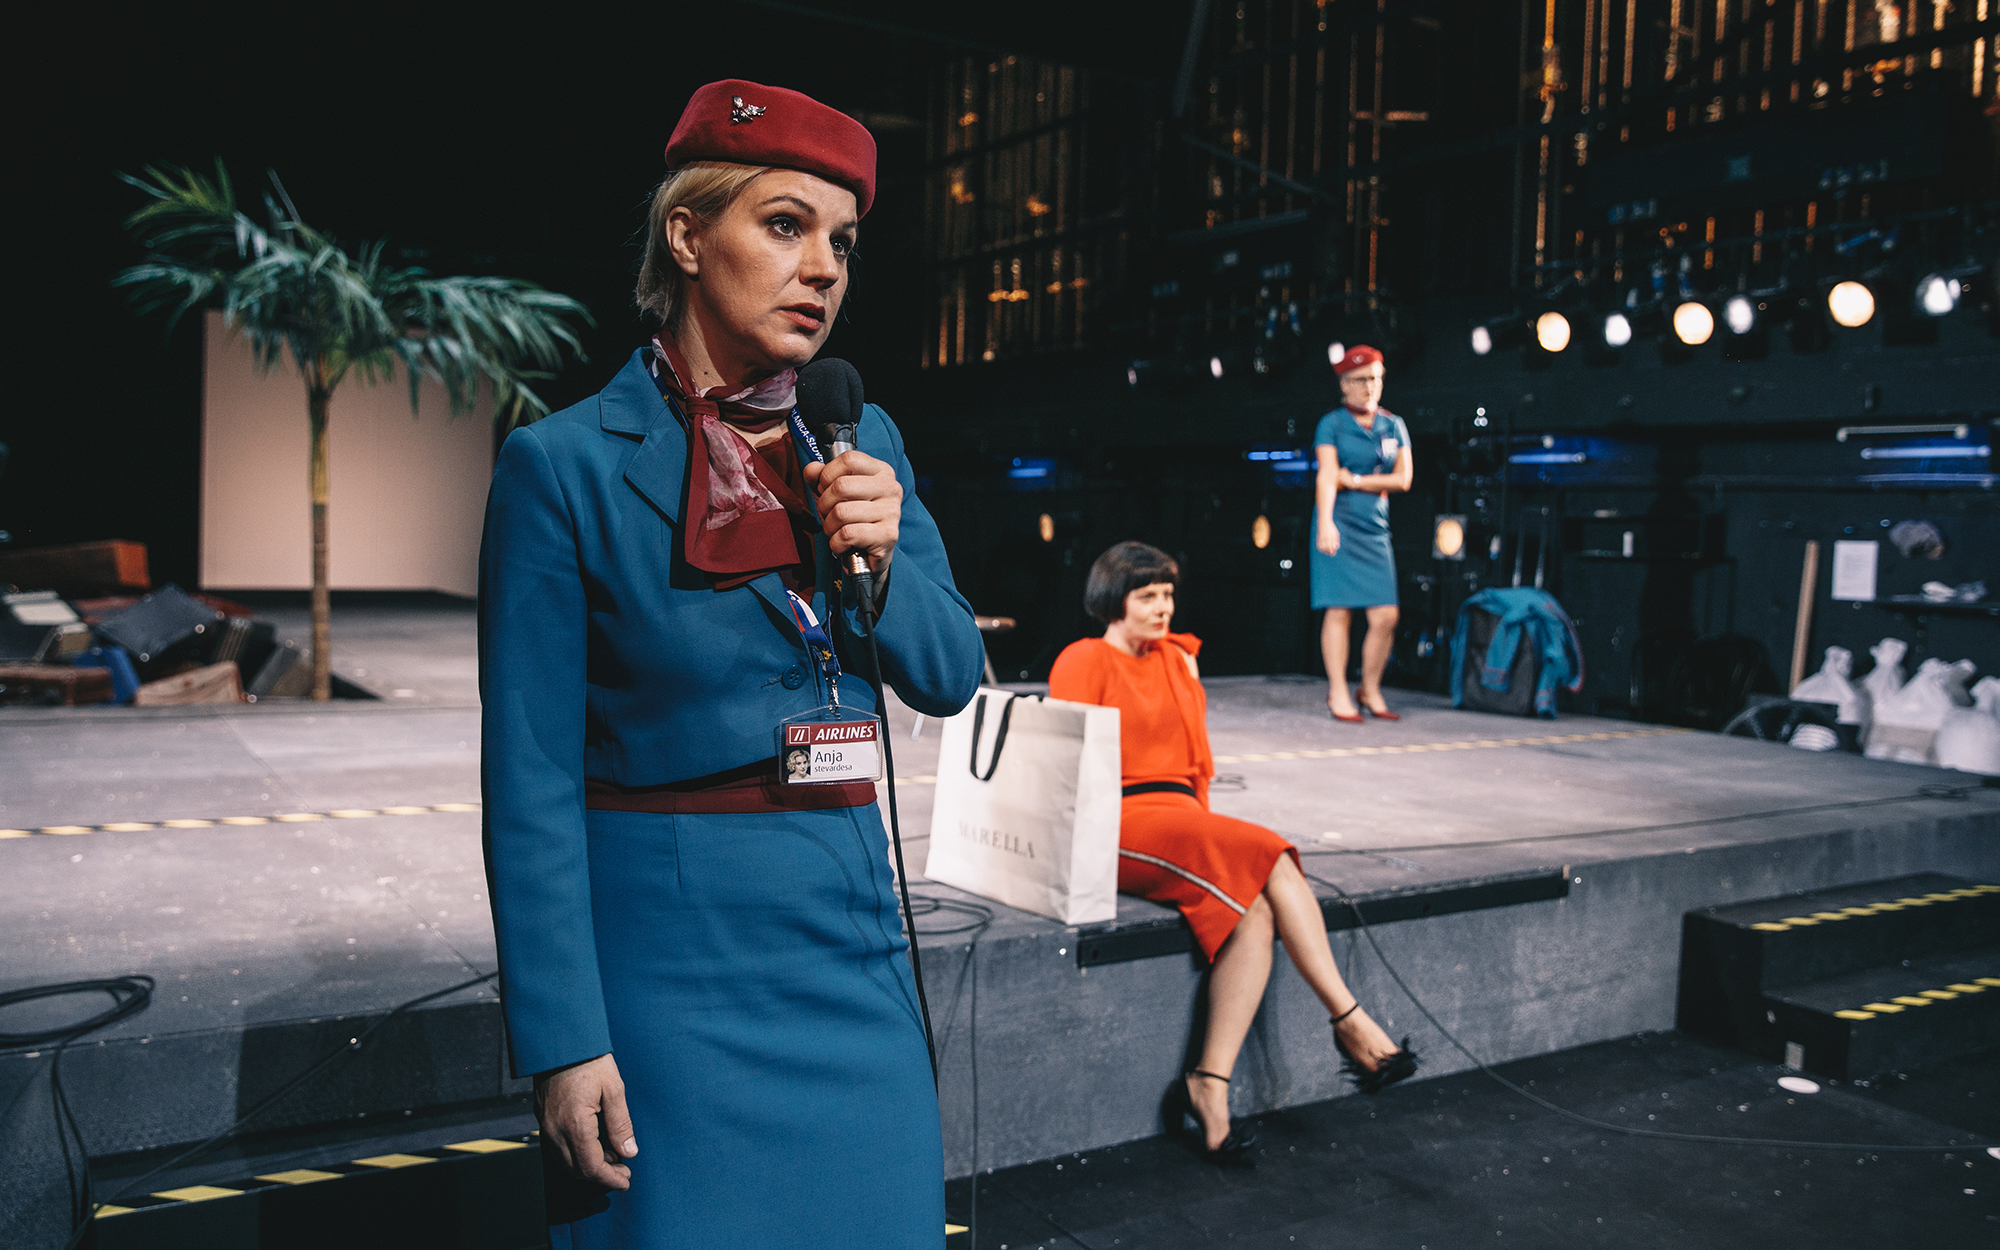 Stevardesi Anja (Karin Komljanec) in Lena (Tanja Dimitrievska) sta v enakih uniformah, z bordo klobučkom in ujemajočo se rutico. Anja (Karin Komljanec) govori v mikrofon, Lena (Tanja Dimitrievska) pa stoji v ozadju. Žana (Jana Zupančič) v rdeči obleki in 